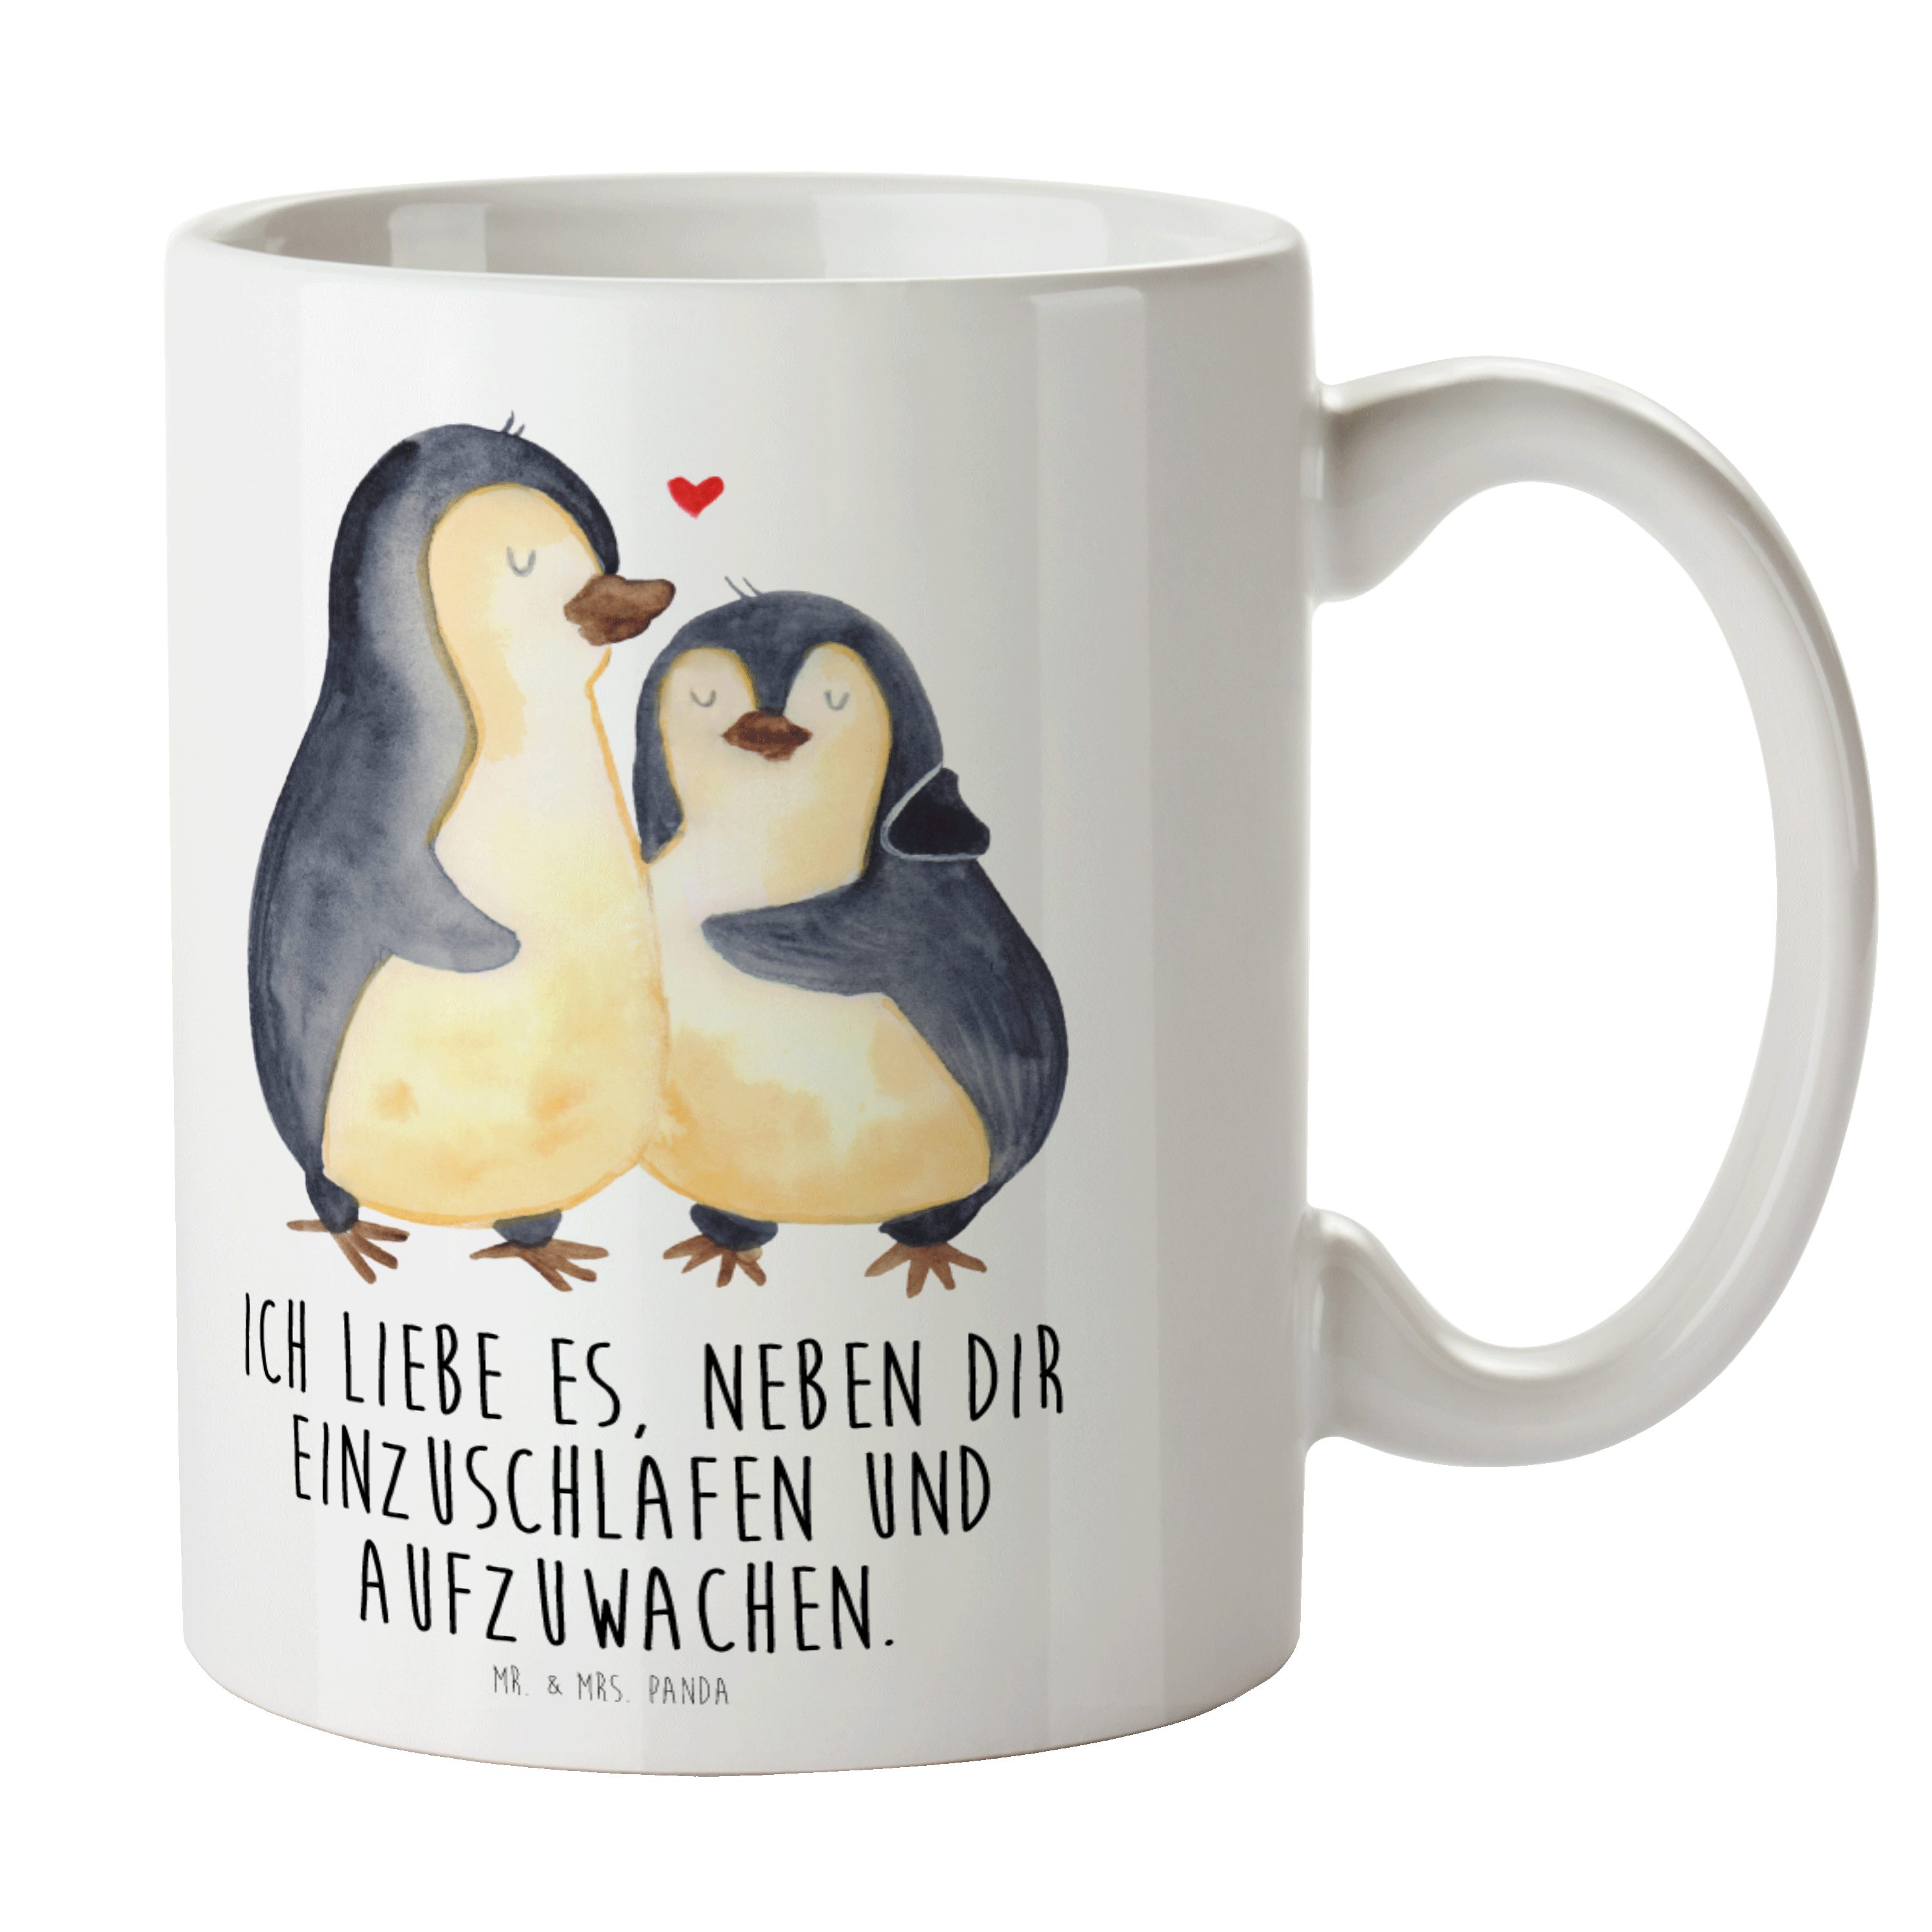 Mr. & Mrs. Panda Tasse Pinguine Einschlafen - Weiß - Geschenk, Becher, Ehemann, Keramiktasse, Keramik